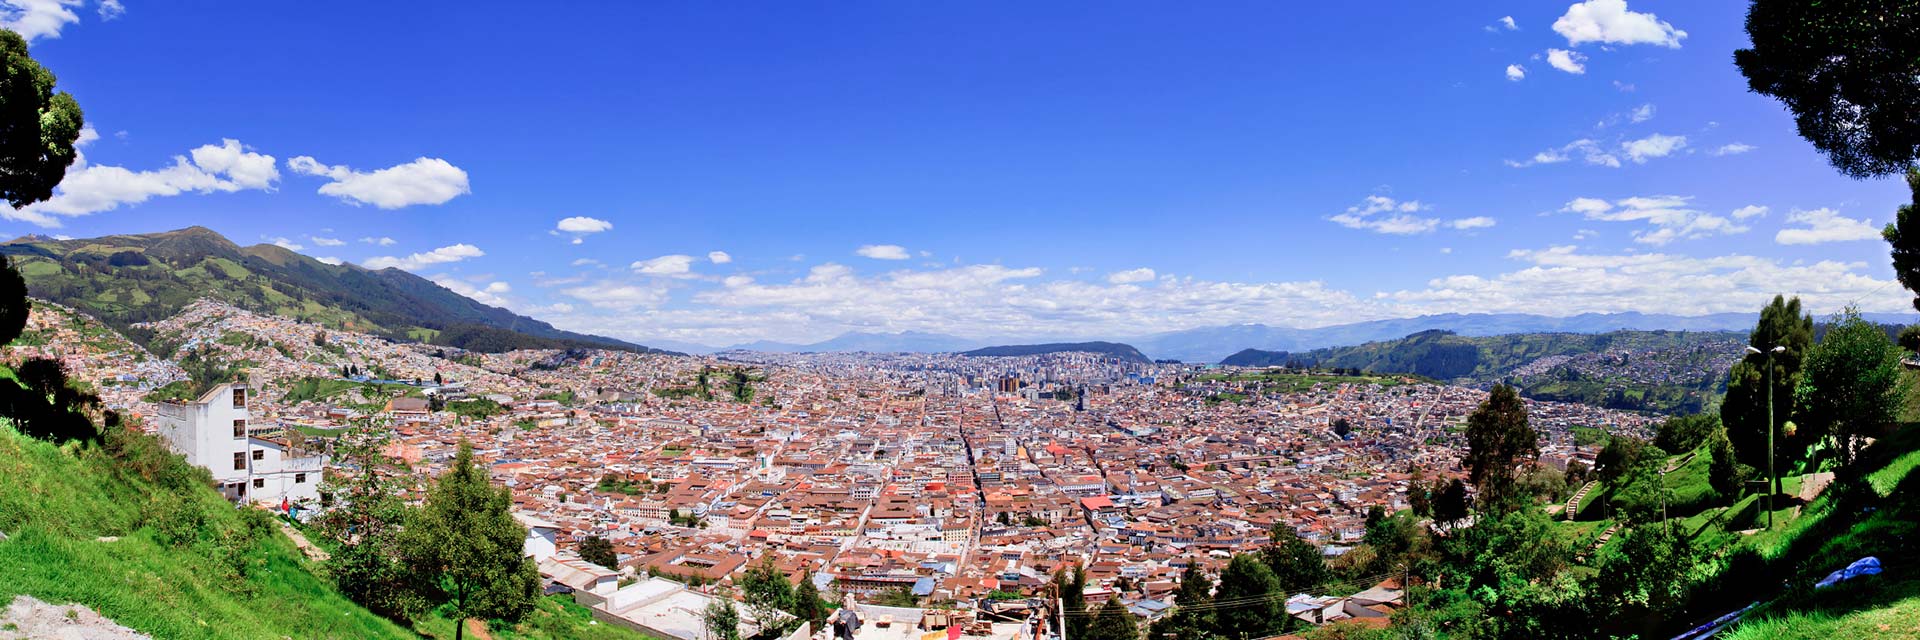 Ecuador Spanischkurspreise für Quito and Otavalo - © Pablo Hidalgo